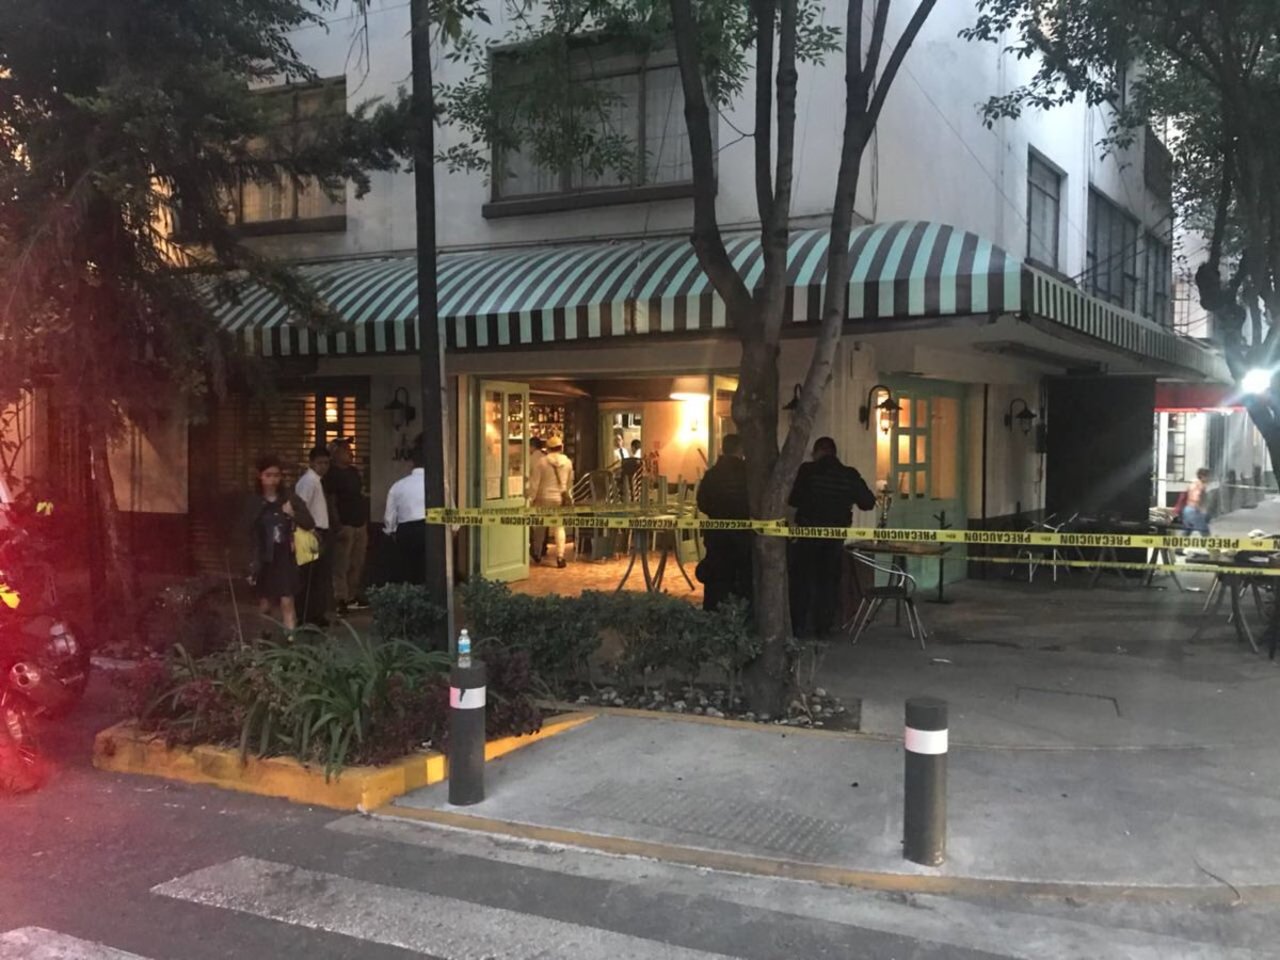 Sin paz. Varios asaltos se han dado en restaurante, causando mucho temor entre los clientes y los dueños de estos establecimientos. (TWITTER)